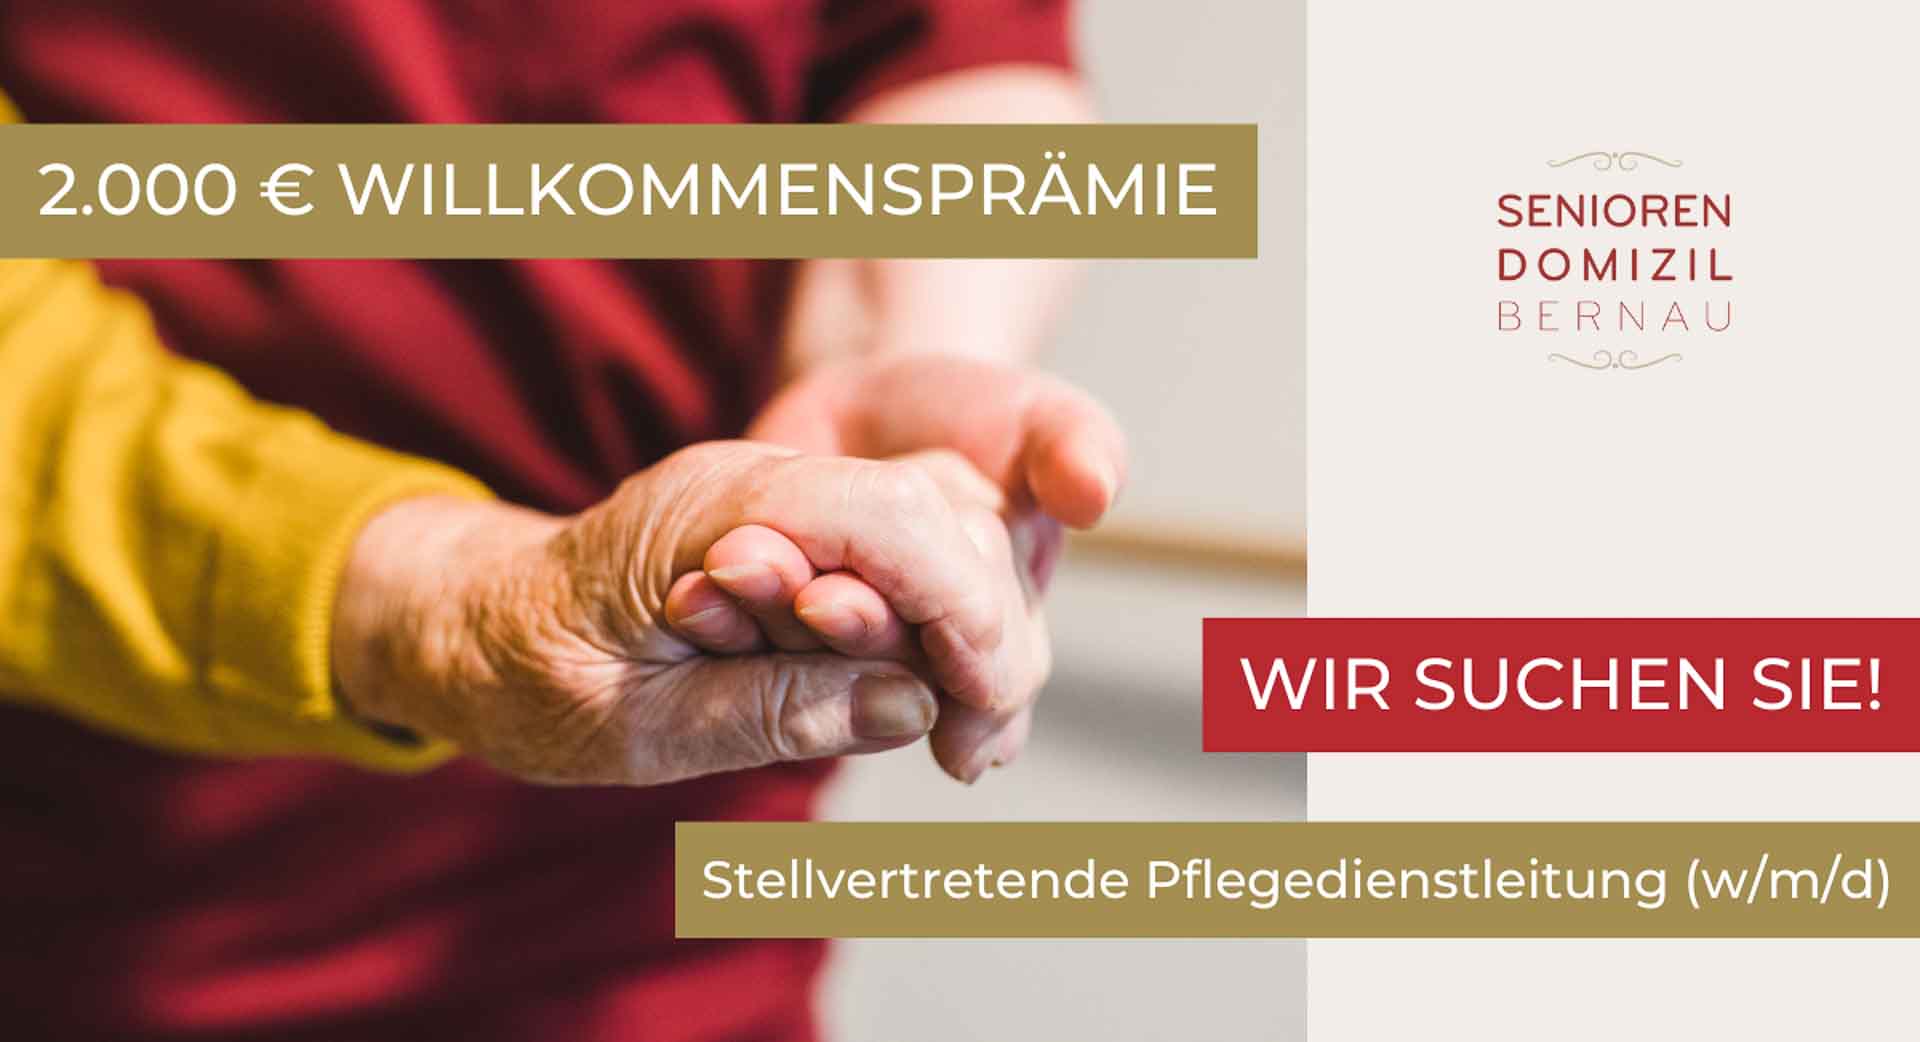 Stellvertretende Pflegedienstleitung (w/m/d) im Seniorendomizil Bernau